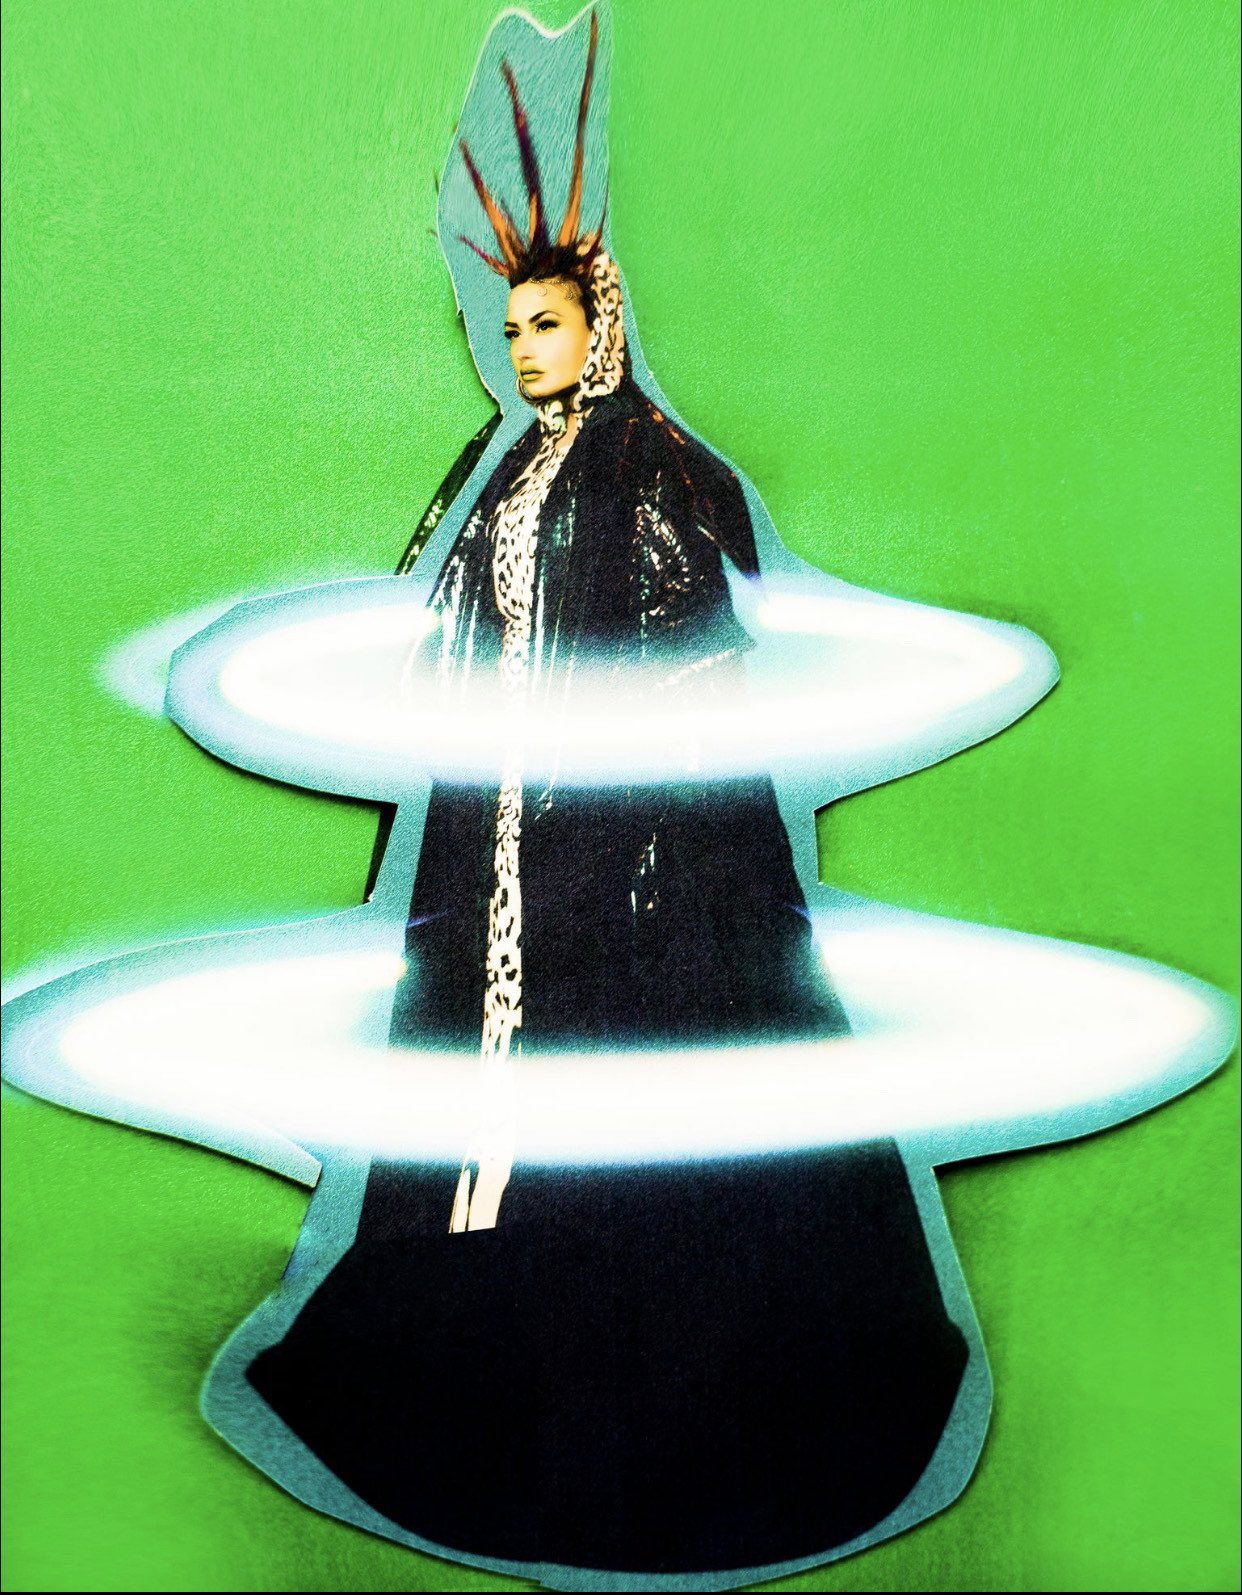 Demi Lovato cũng chọn chiếc áo choàng oversized trong BST Xuân Hè của nhà thiết kế Công Trí xuất hiện trong bộ ảnh của tạp chí Paper